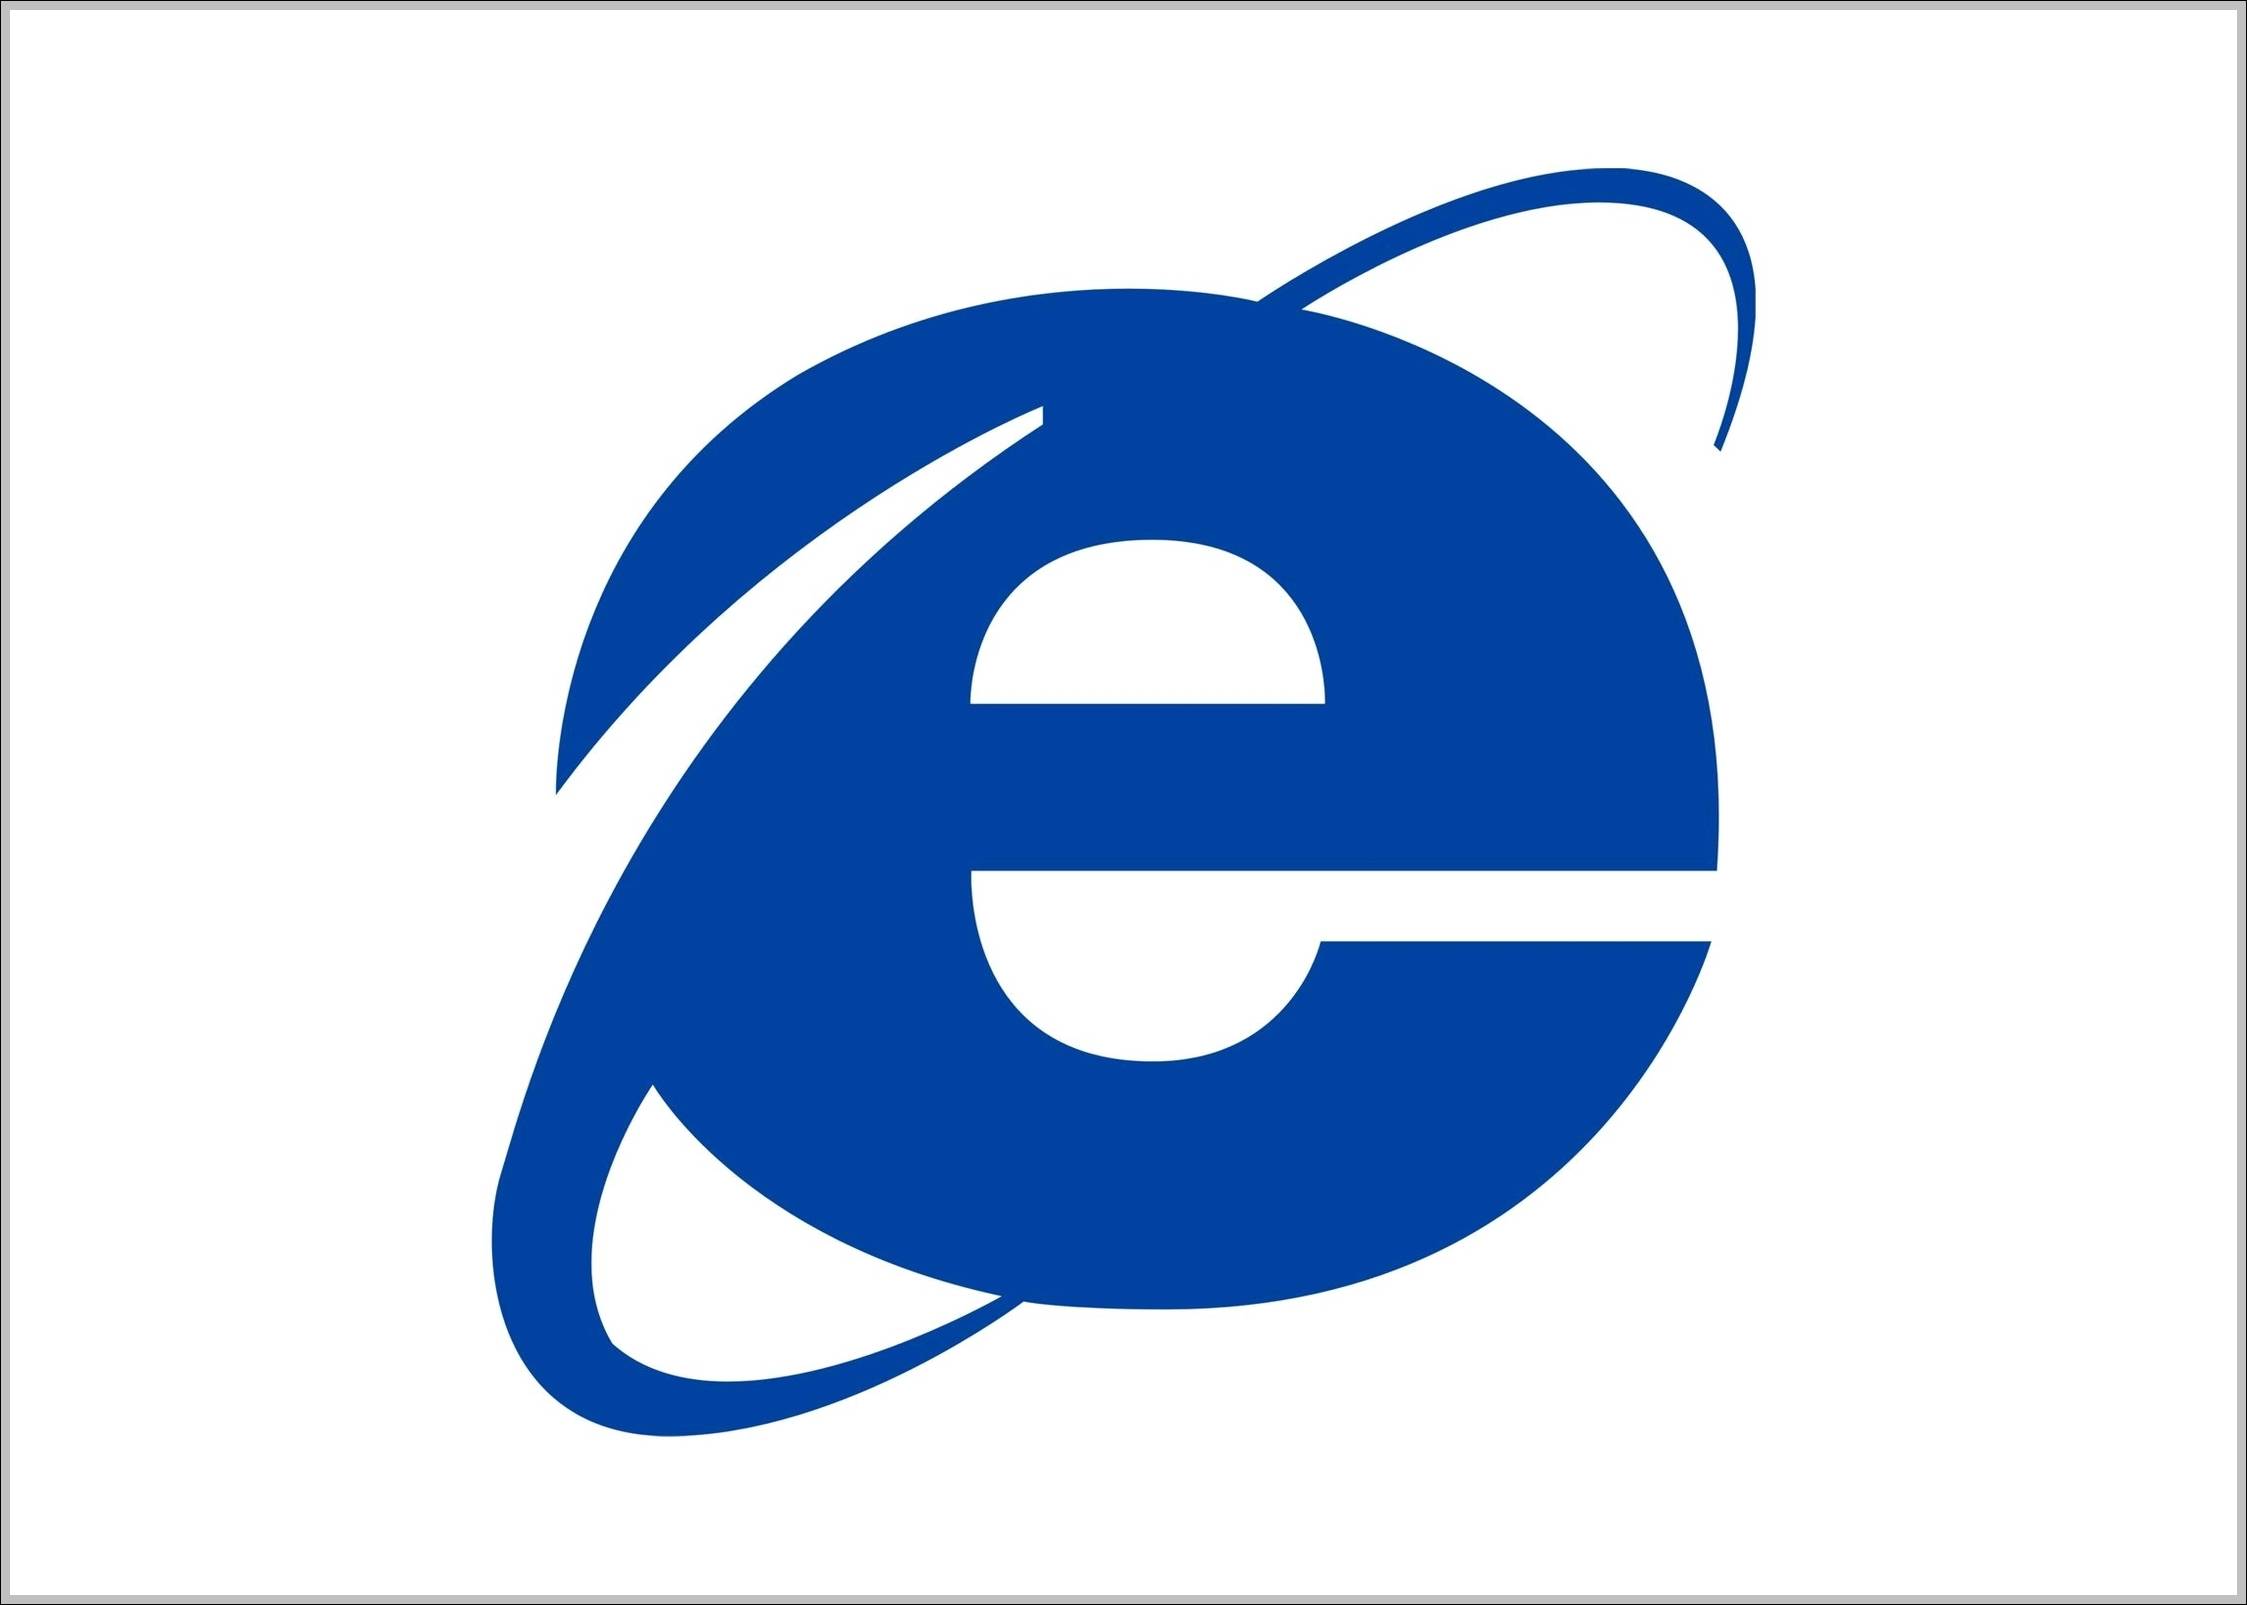 Internet Explorer Old Logo - Internet Explorer logo old | Logo Sign - Logos, Signs, Symbols ...